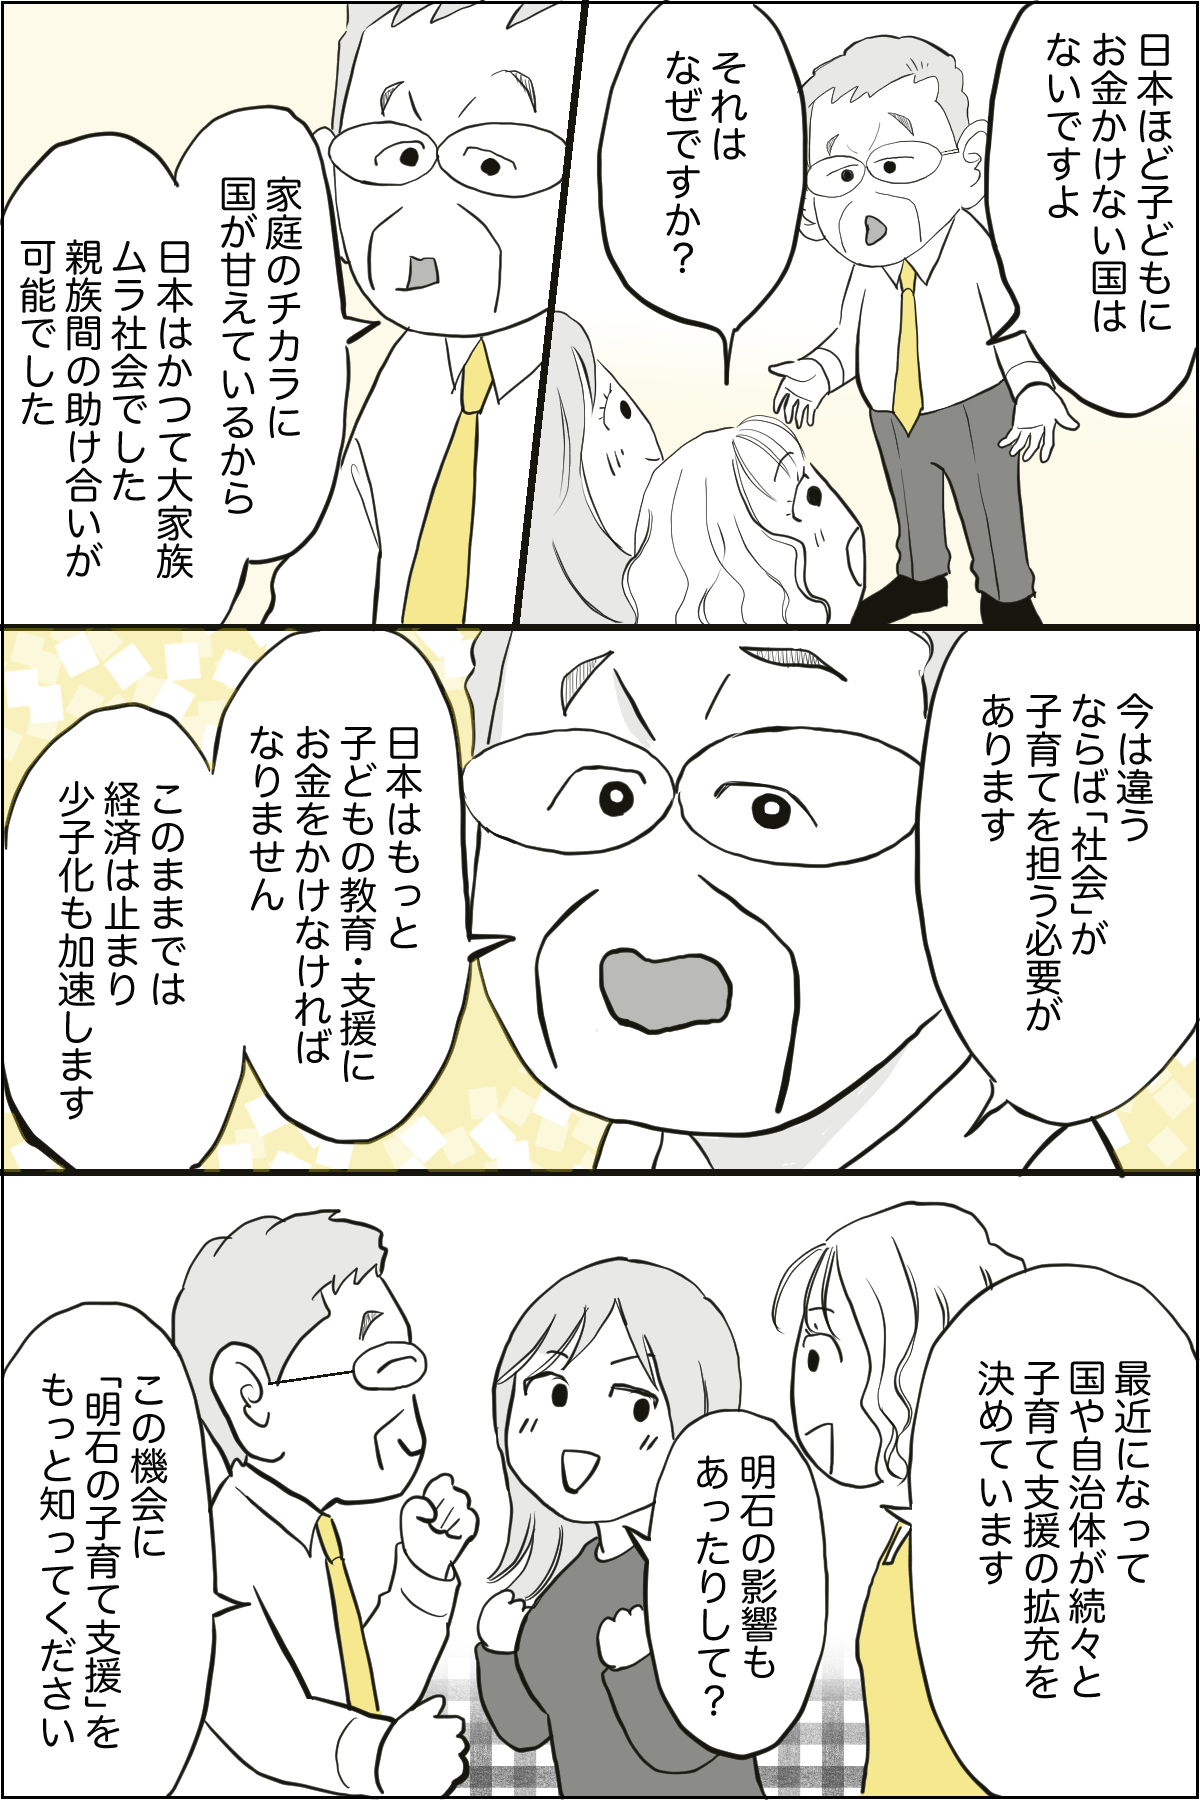 泉市長記事漫画化_出力_004